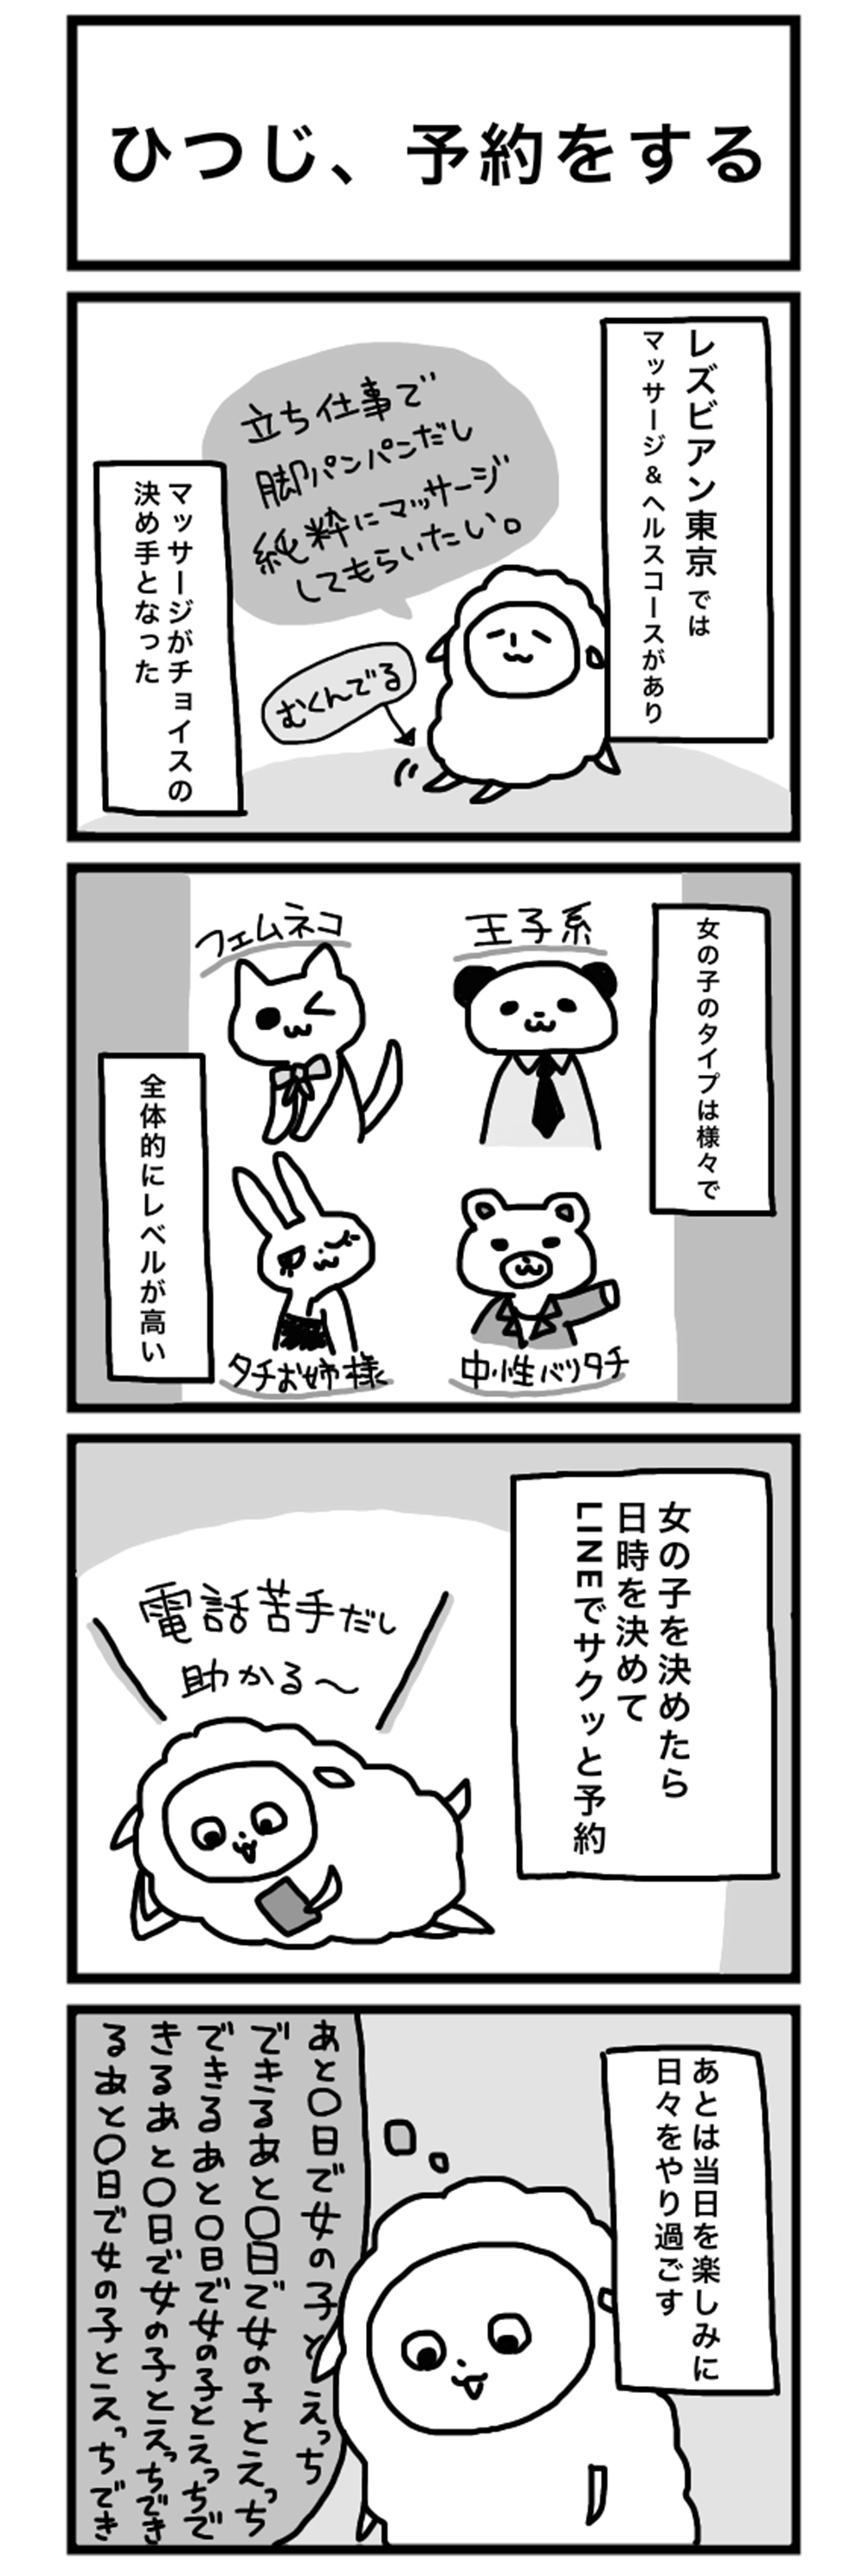 レズビアン東京 漫画